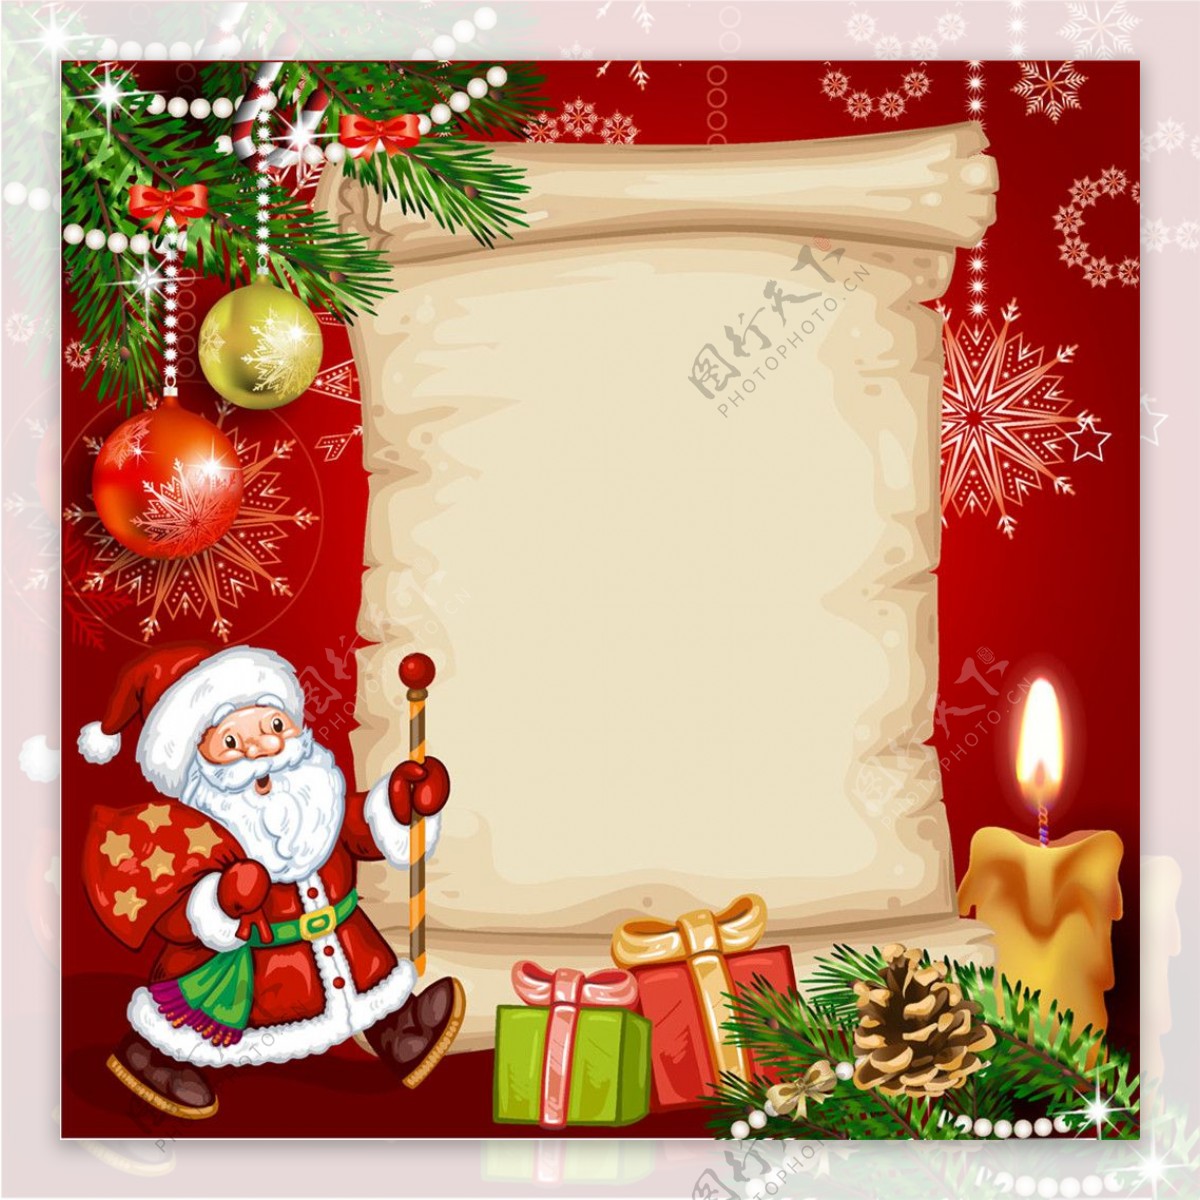 背礼物的圣诞老人和圣诞球图片